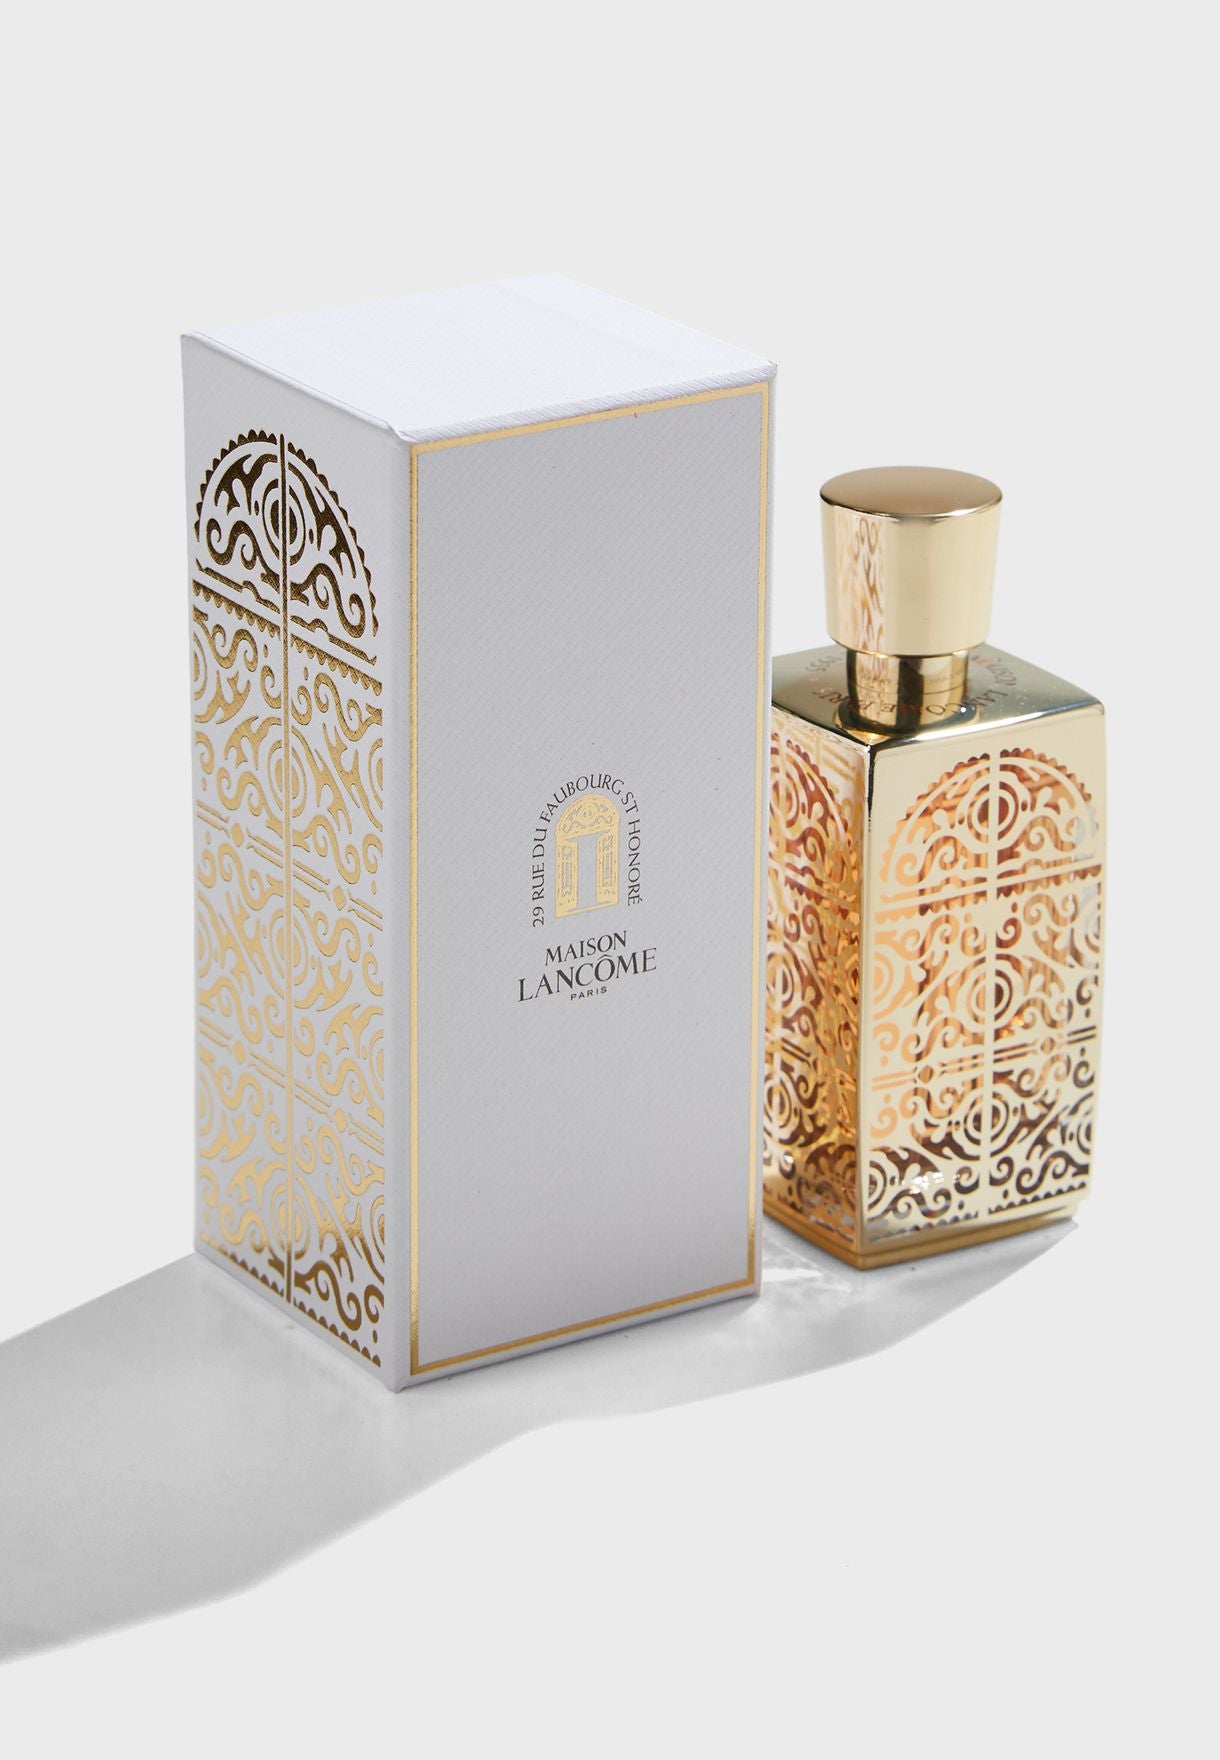 Apa de parfum Lancome L'autre Oud Maison – 75 ml. Parfum întrerupt ediția 2015-Lancome L'autre Oud Maison-Lancome-75ml-creedparfumuri probe